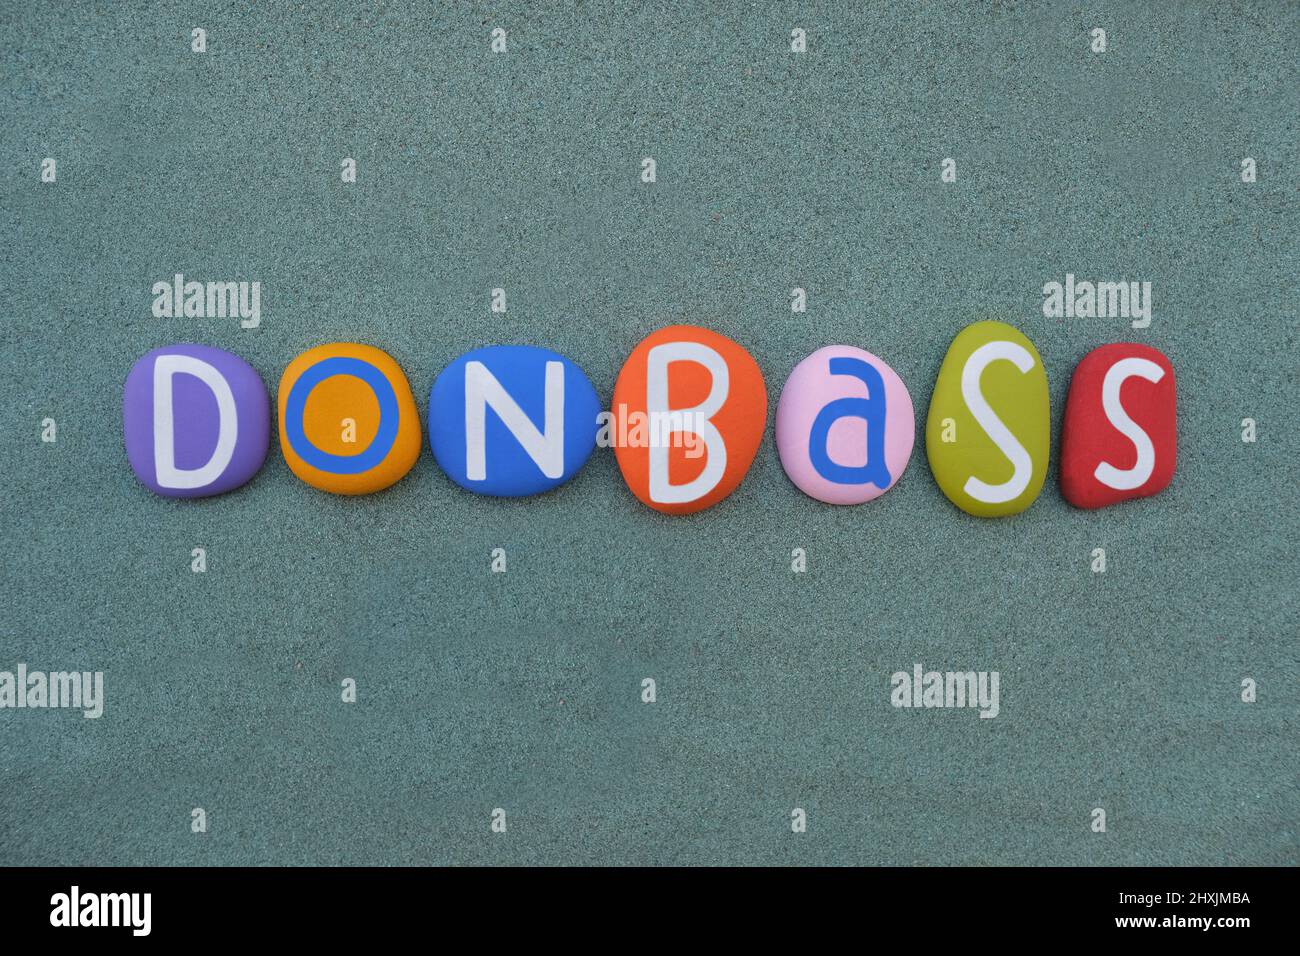 Donbass, historische, kulturelle und wirtschaftliche Region im Südosten der Ukraine, komponiert mit handbemalten mehrfarbigen Steinbuchstaben über grünem Sand Stockfoto